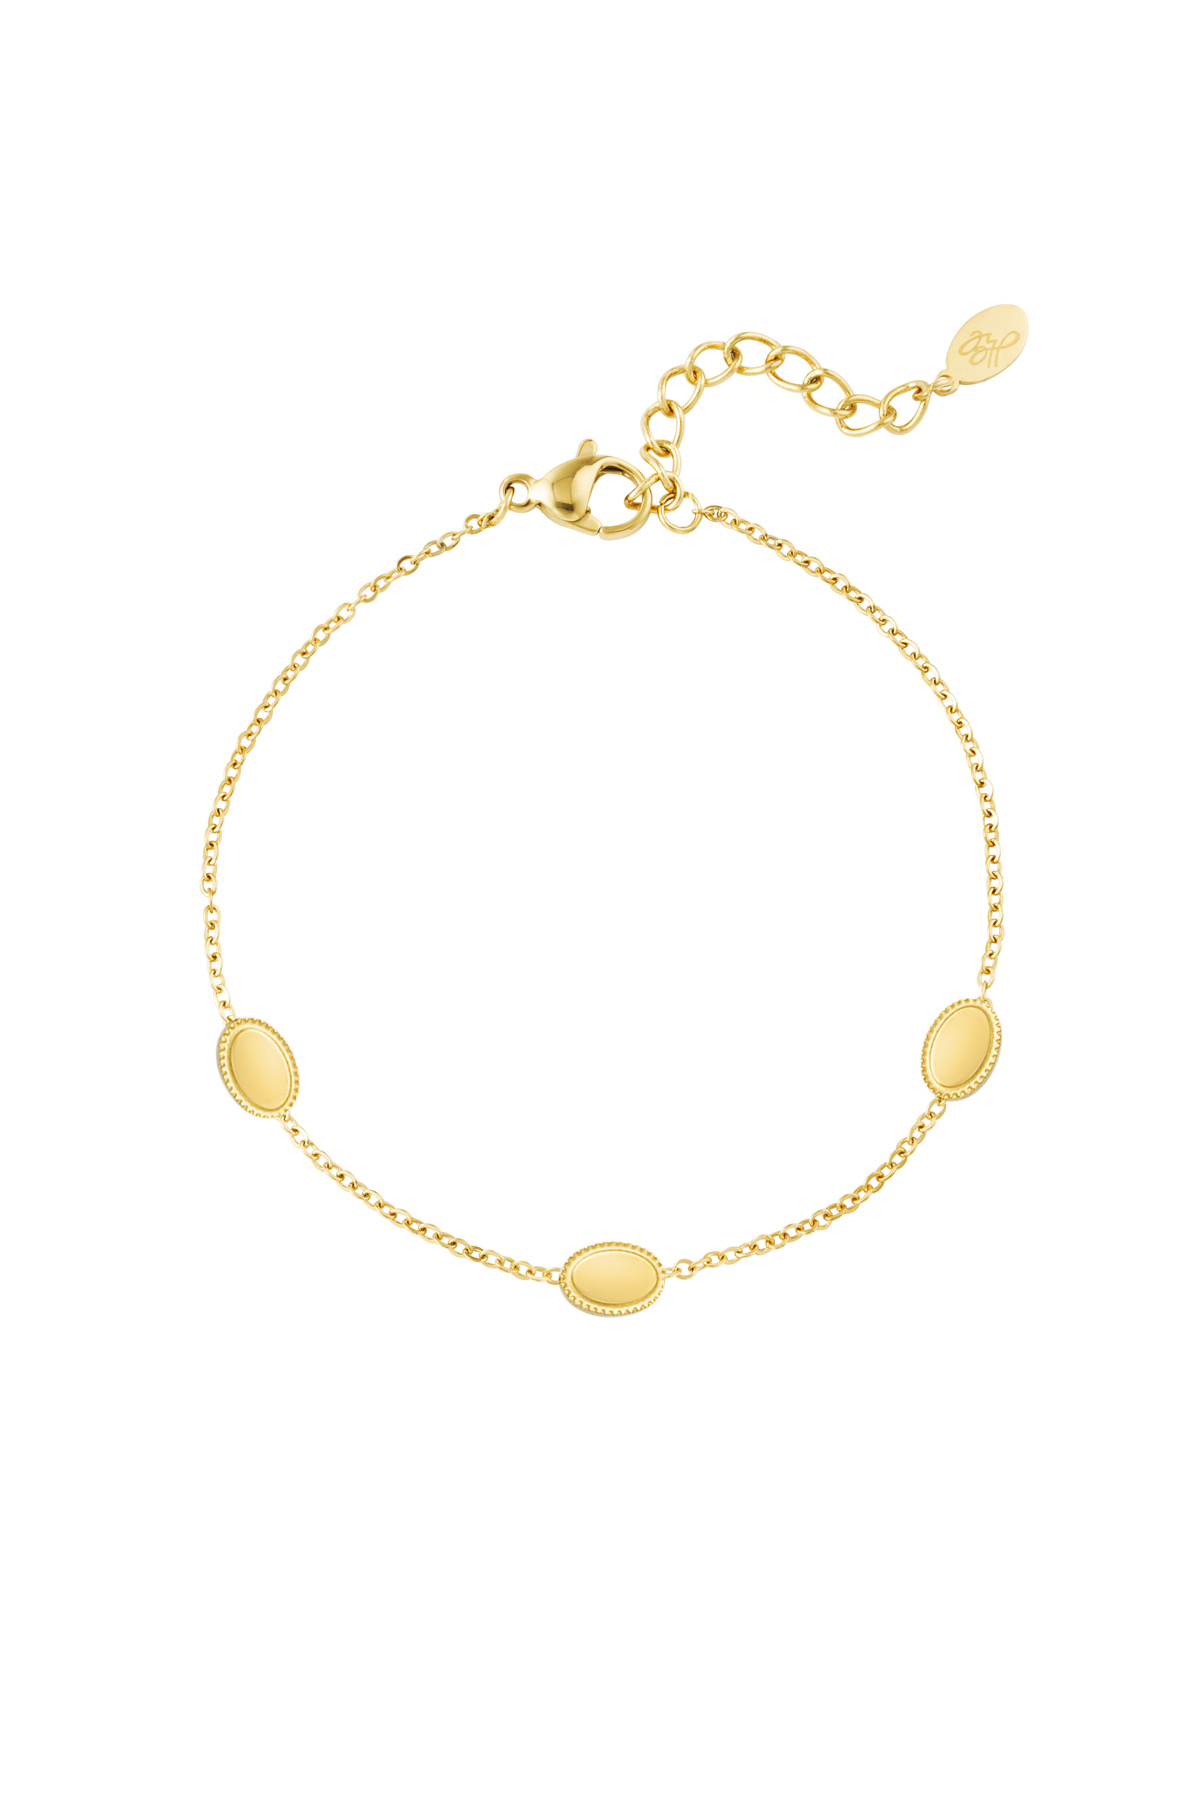 Bracelet vintage 3 charms - gold